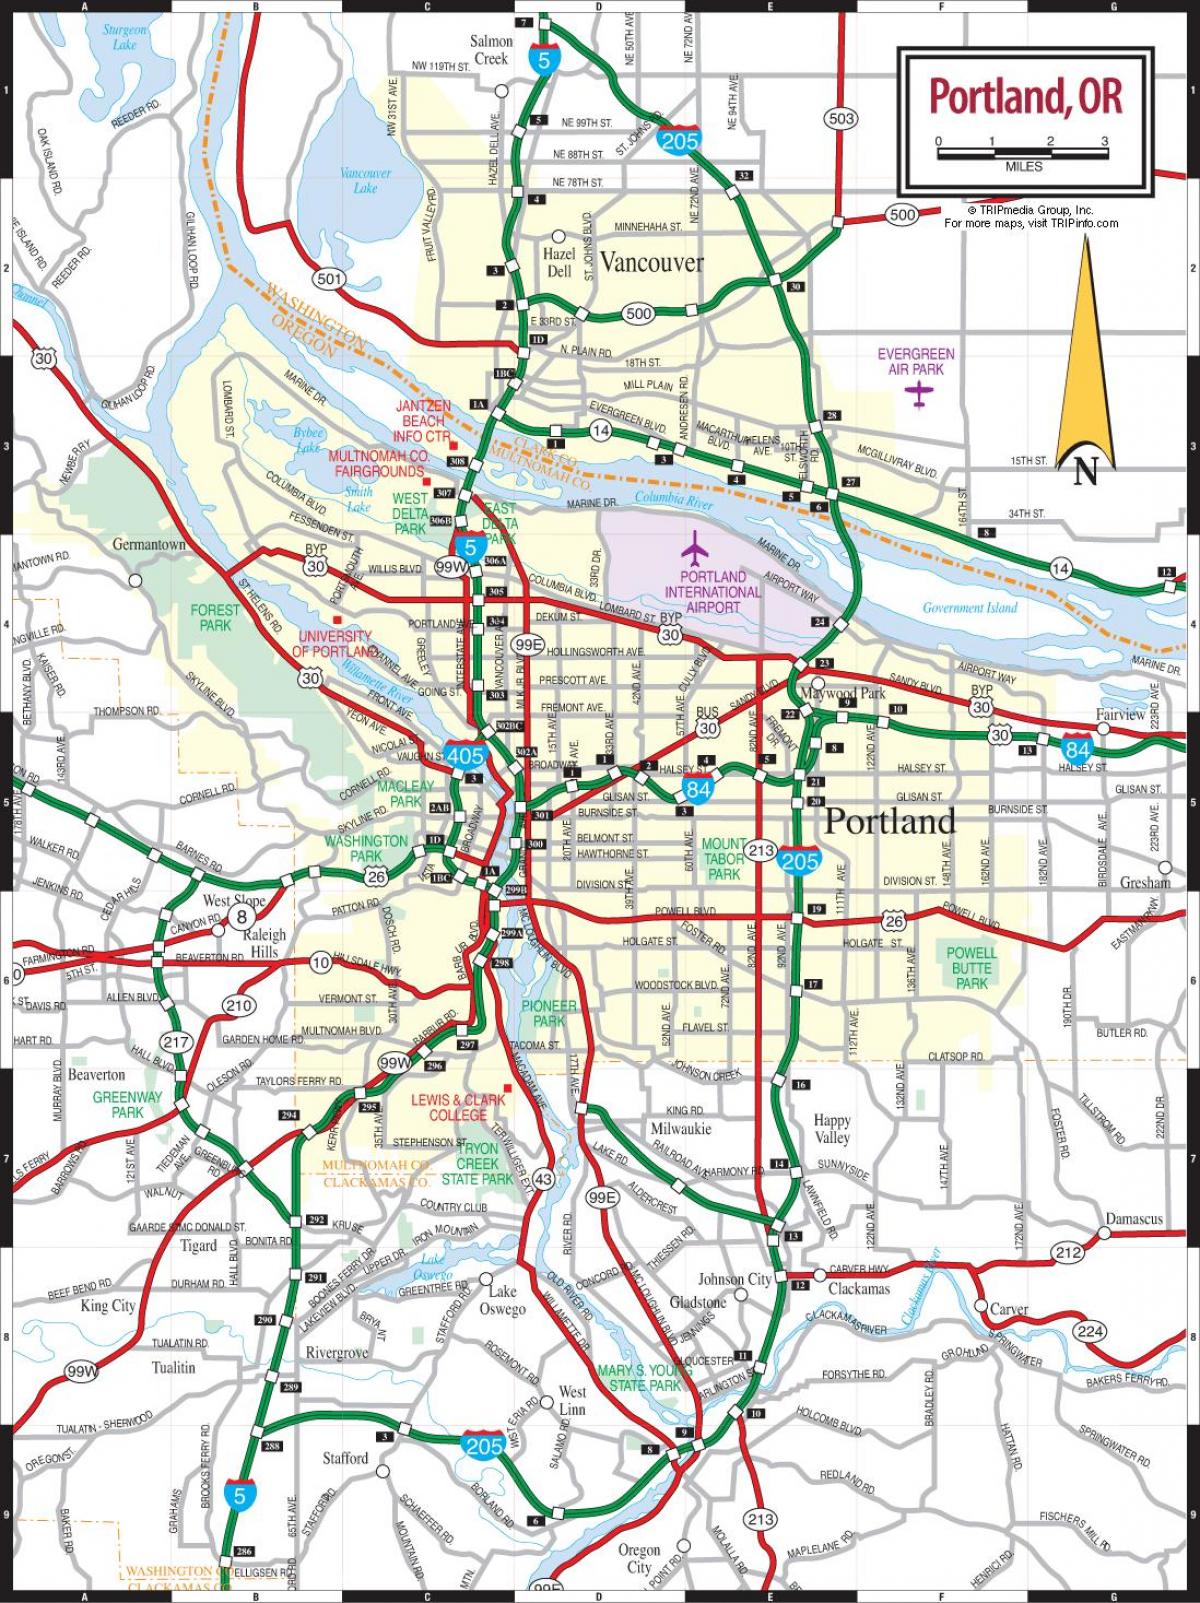 Portland mapa de carreteres